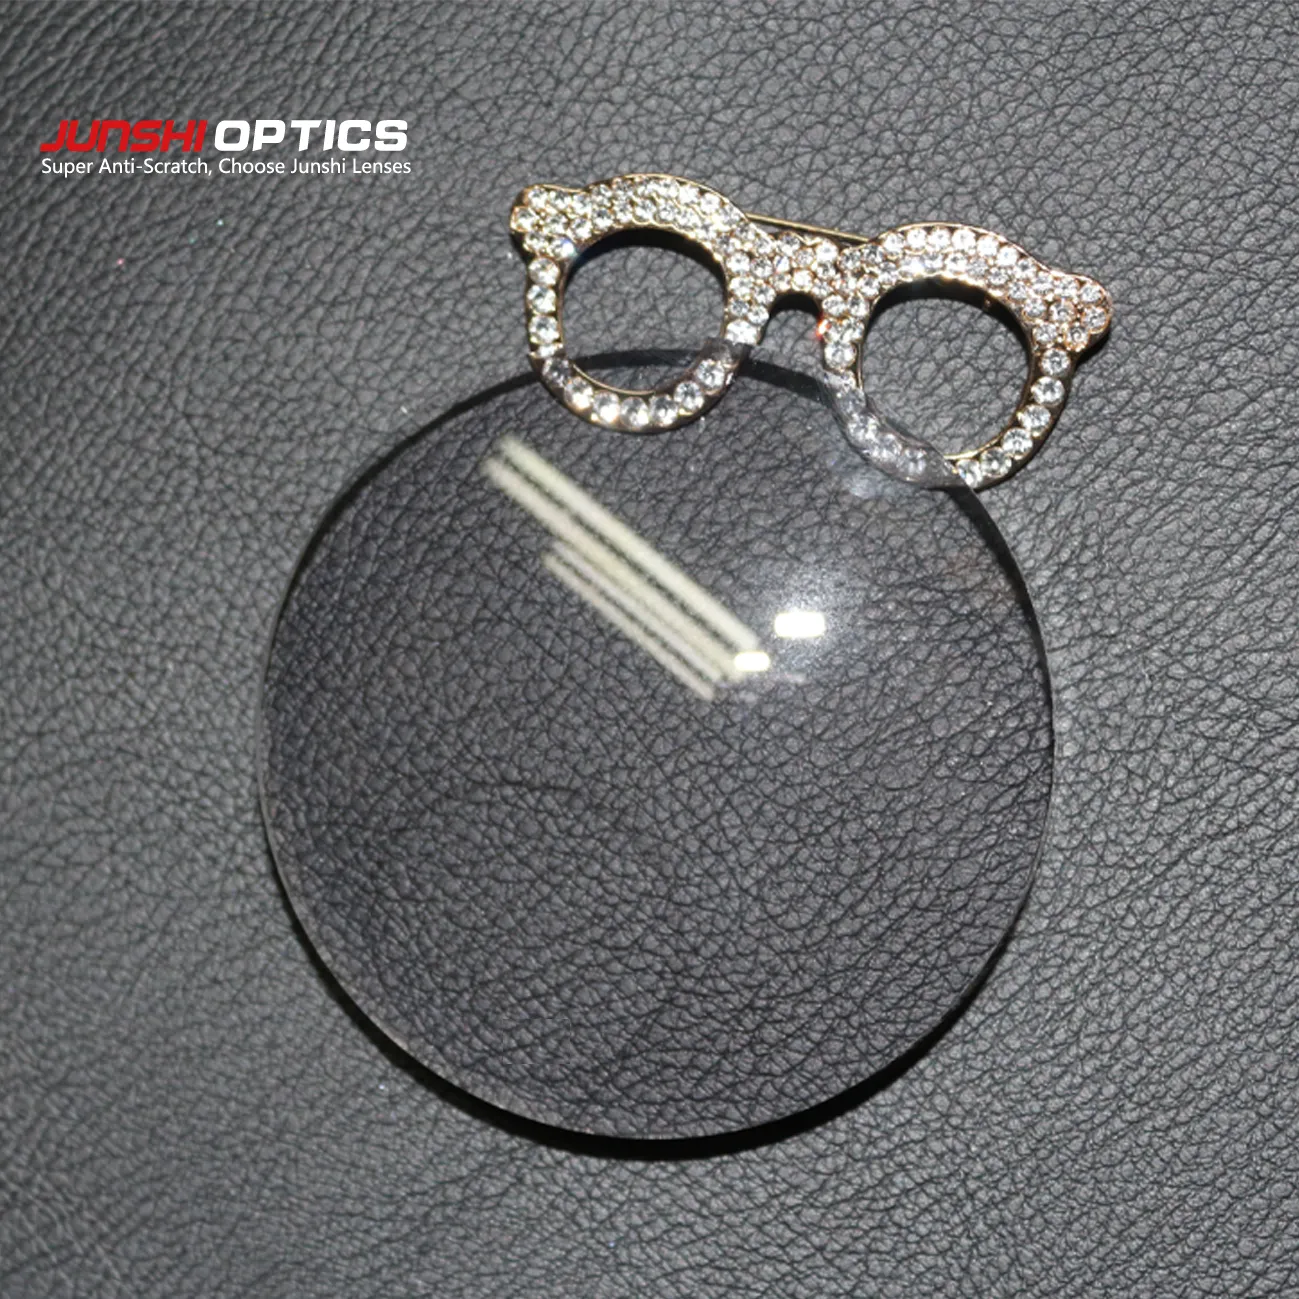 Lente de resina para óculos UC/HC/HMC, lente bifold de topo redondo 1.56 para varejo, fabricante